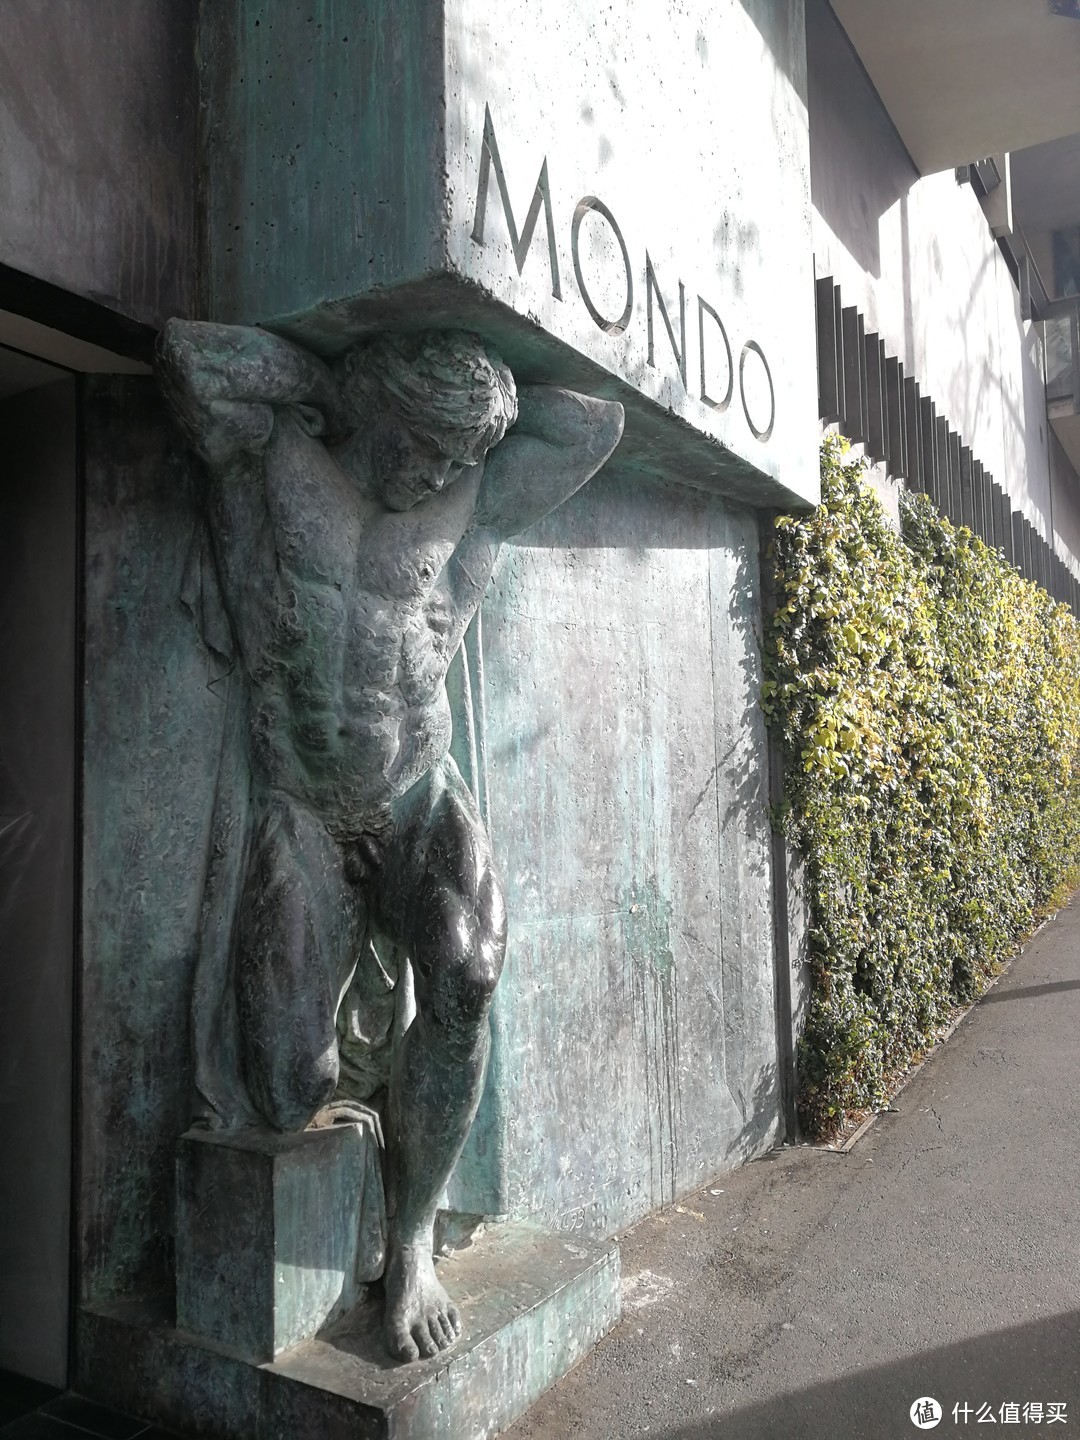 市场附近酒店门前的雕塑